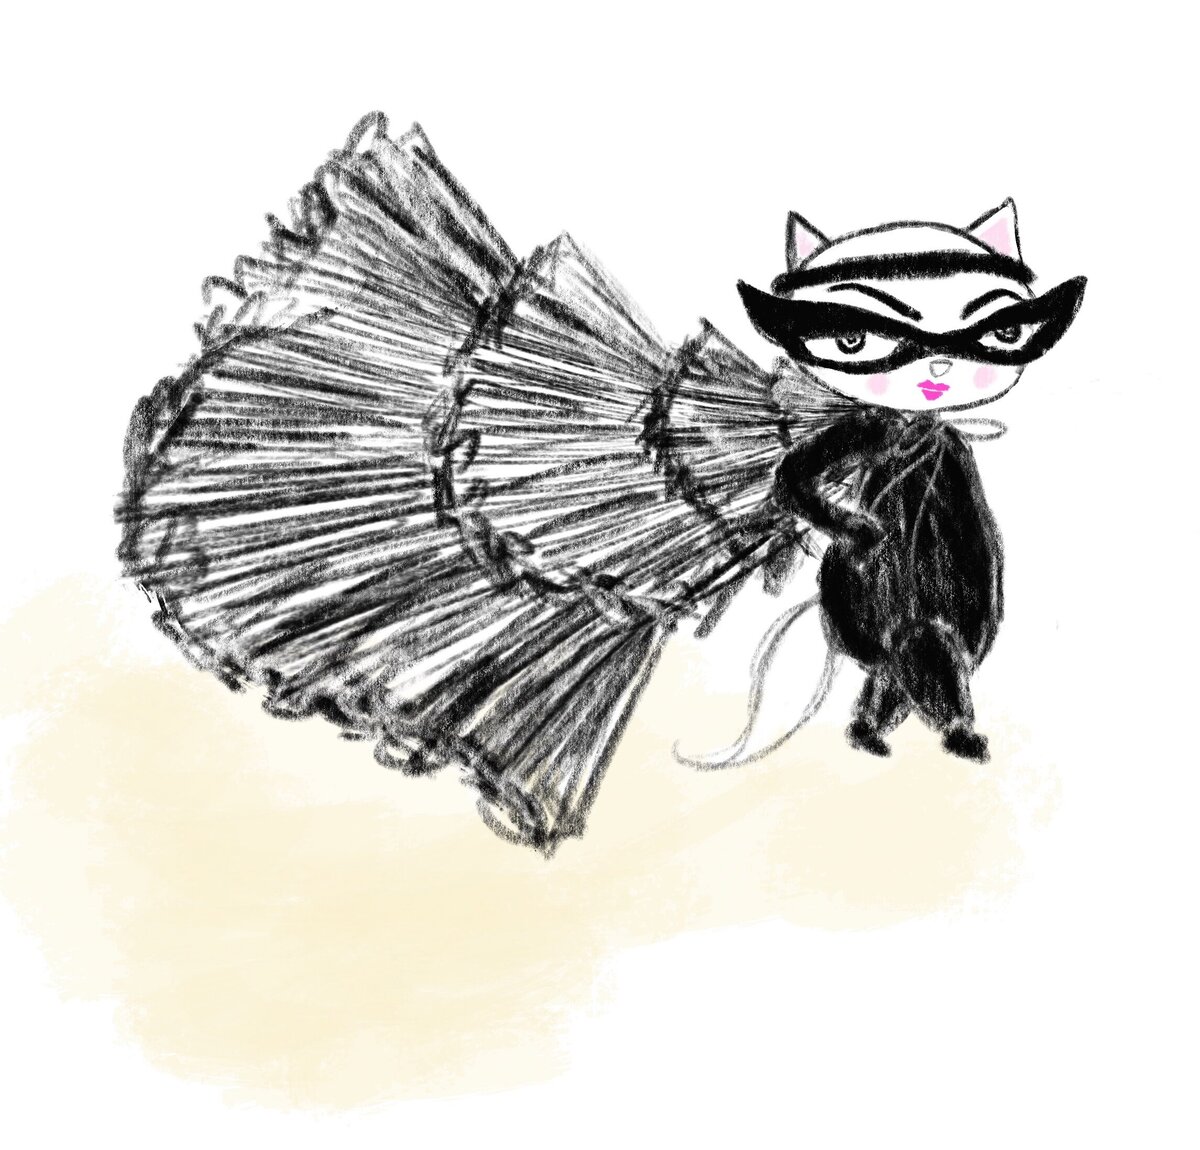 Cat in Cape illustration